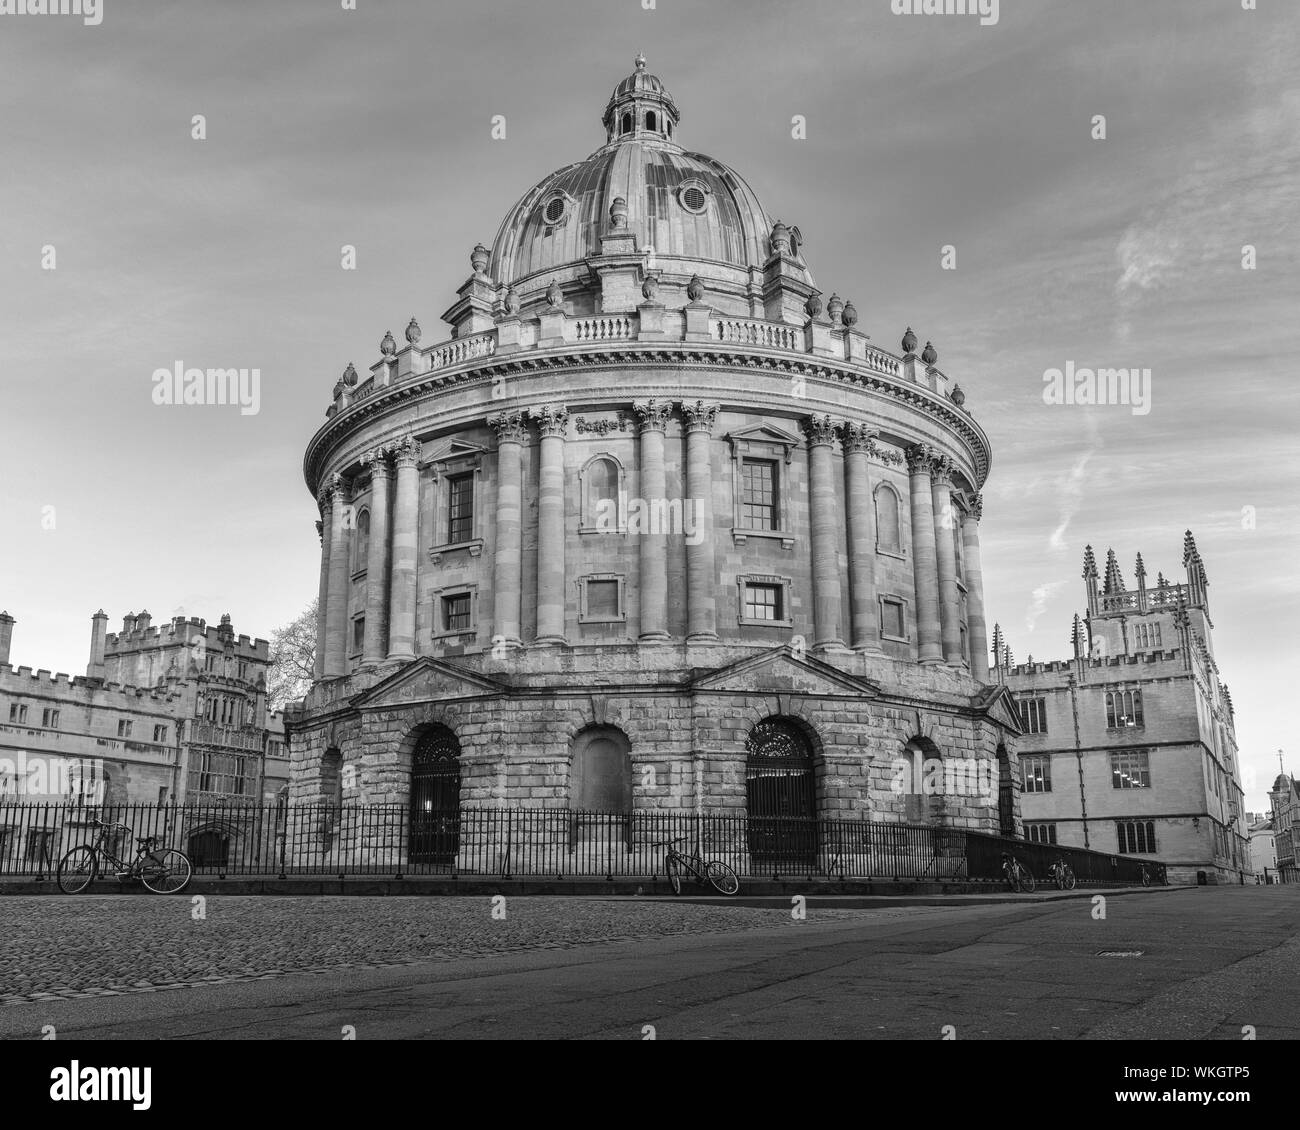 La Radcliffe Camera è situato nel cuore di Oxford, dietro la vecchia biblioteca Bodleian Library. Qui raffigurato come il sole è in aumento. Foto Stock